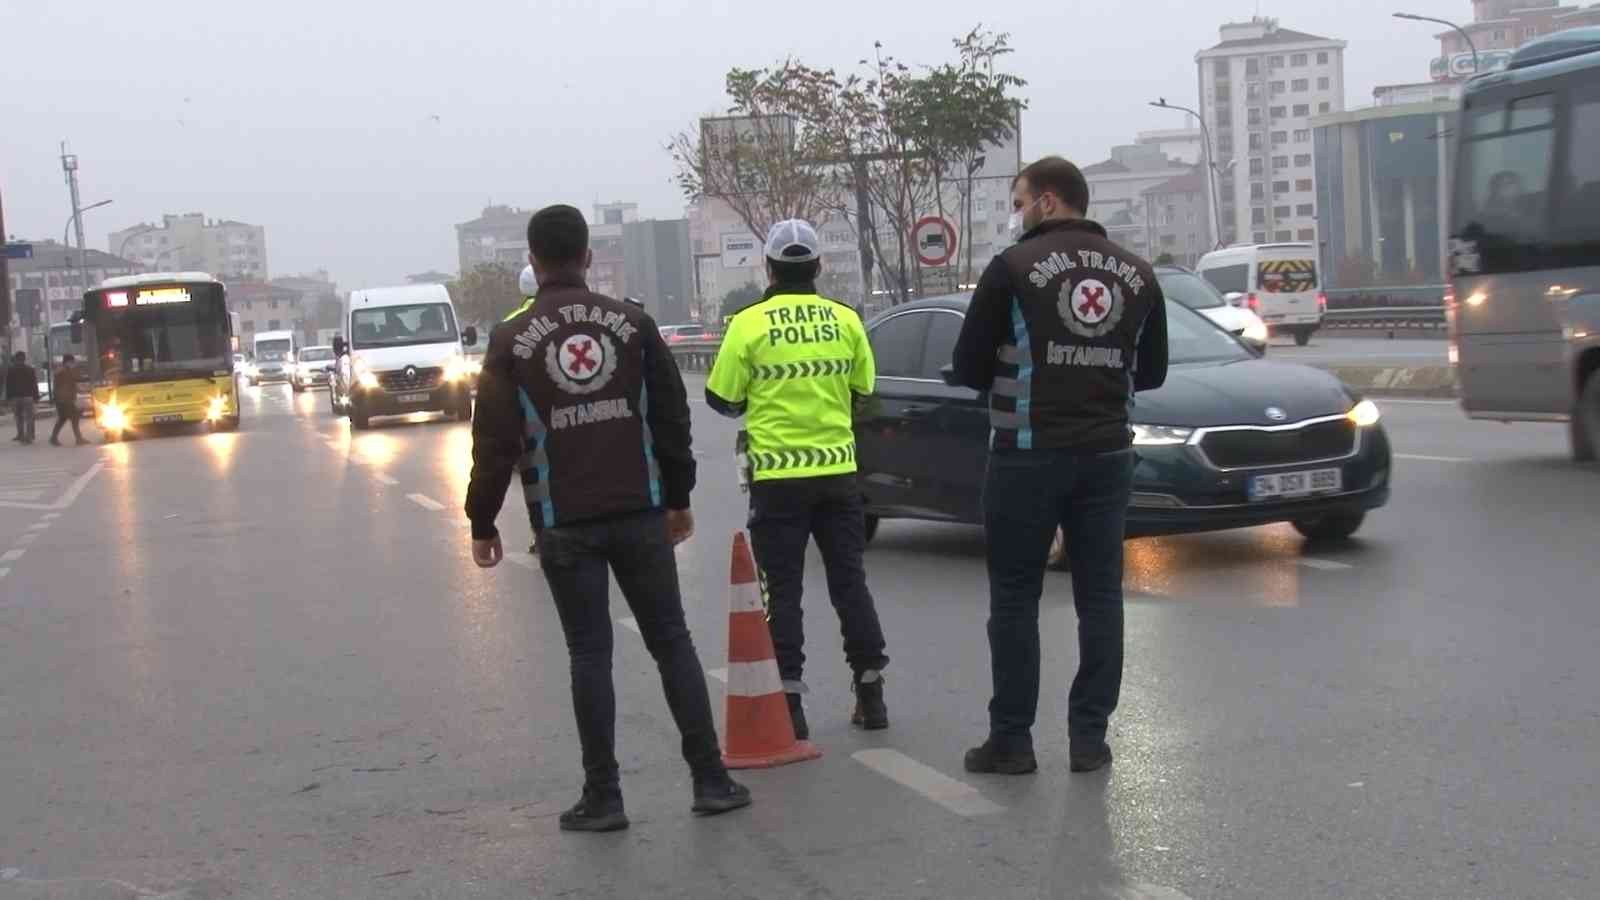 Ataşehir’de servis araçlarına ‘sıkı denetim’ #istanbul